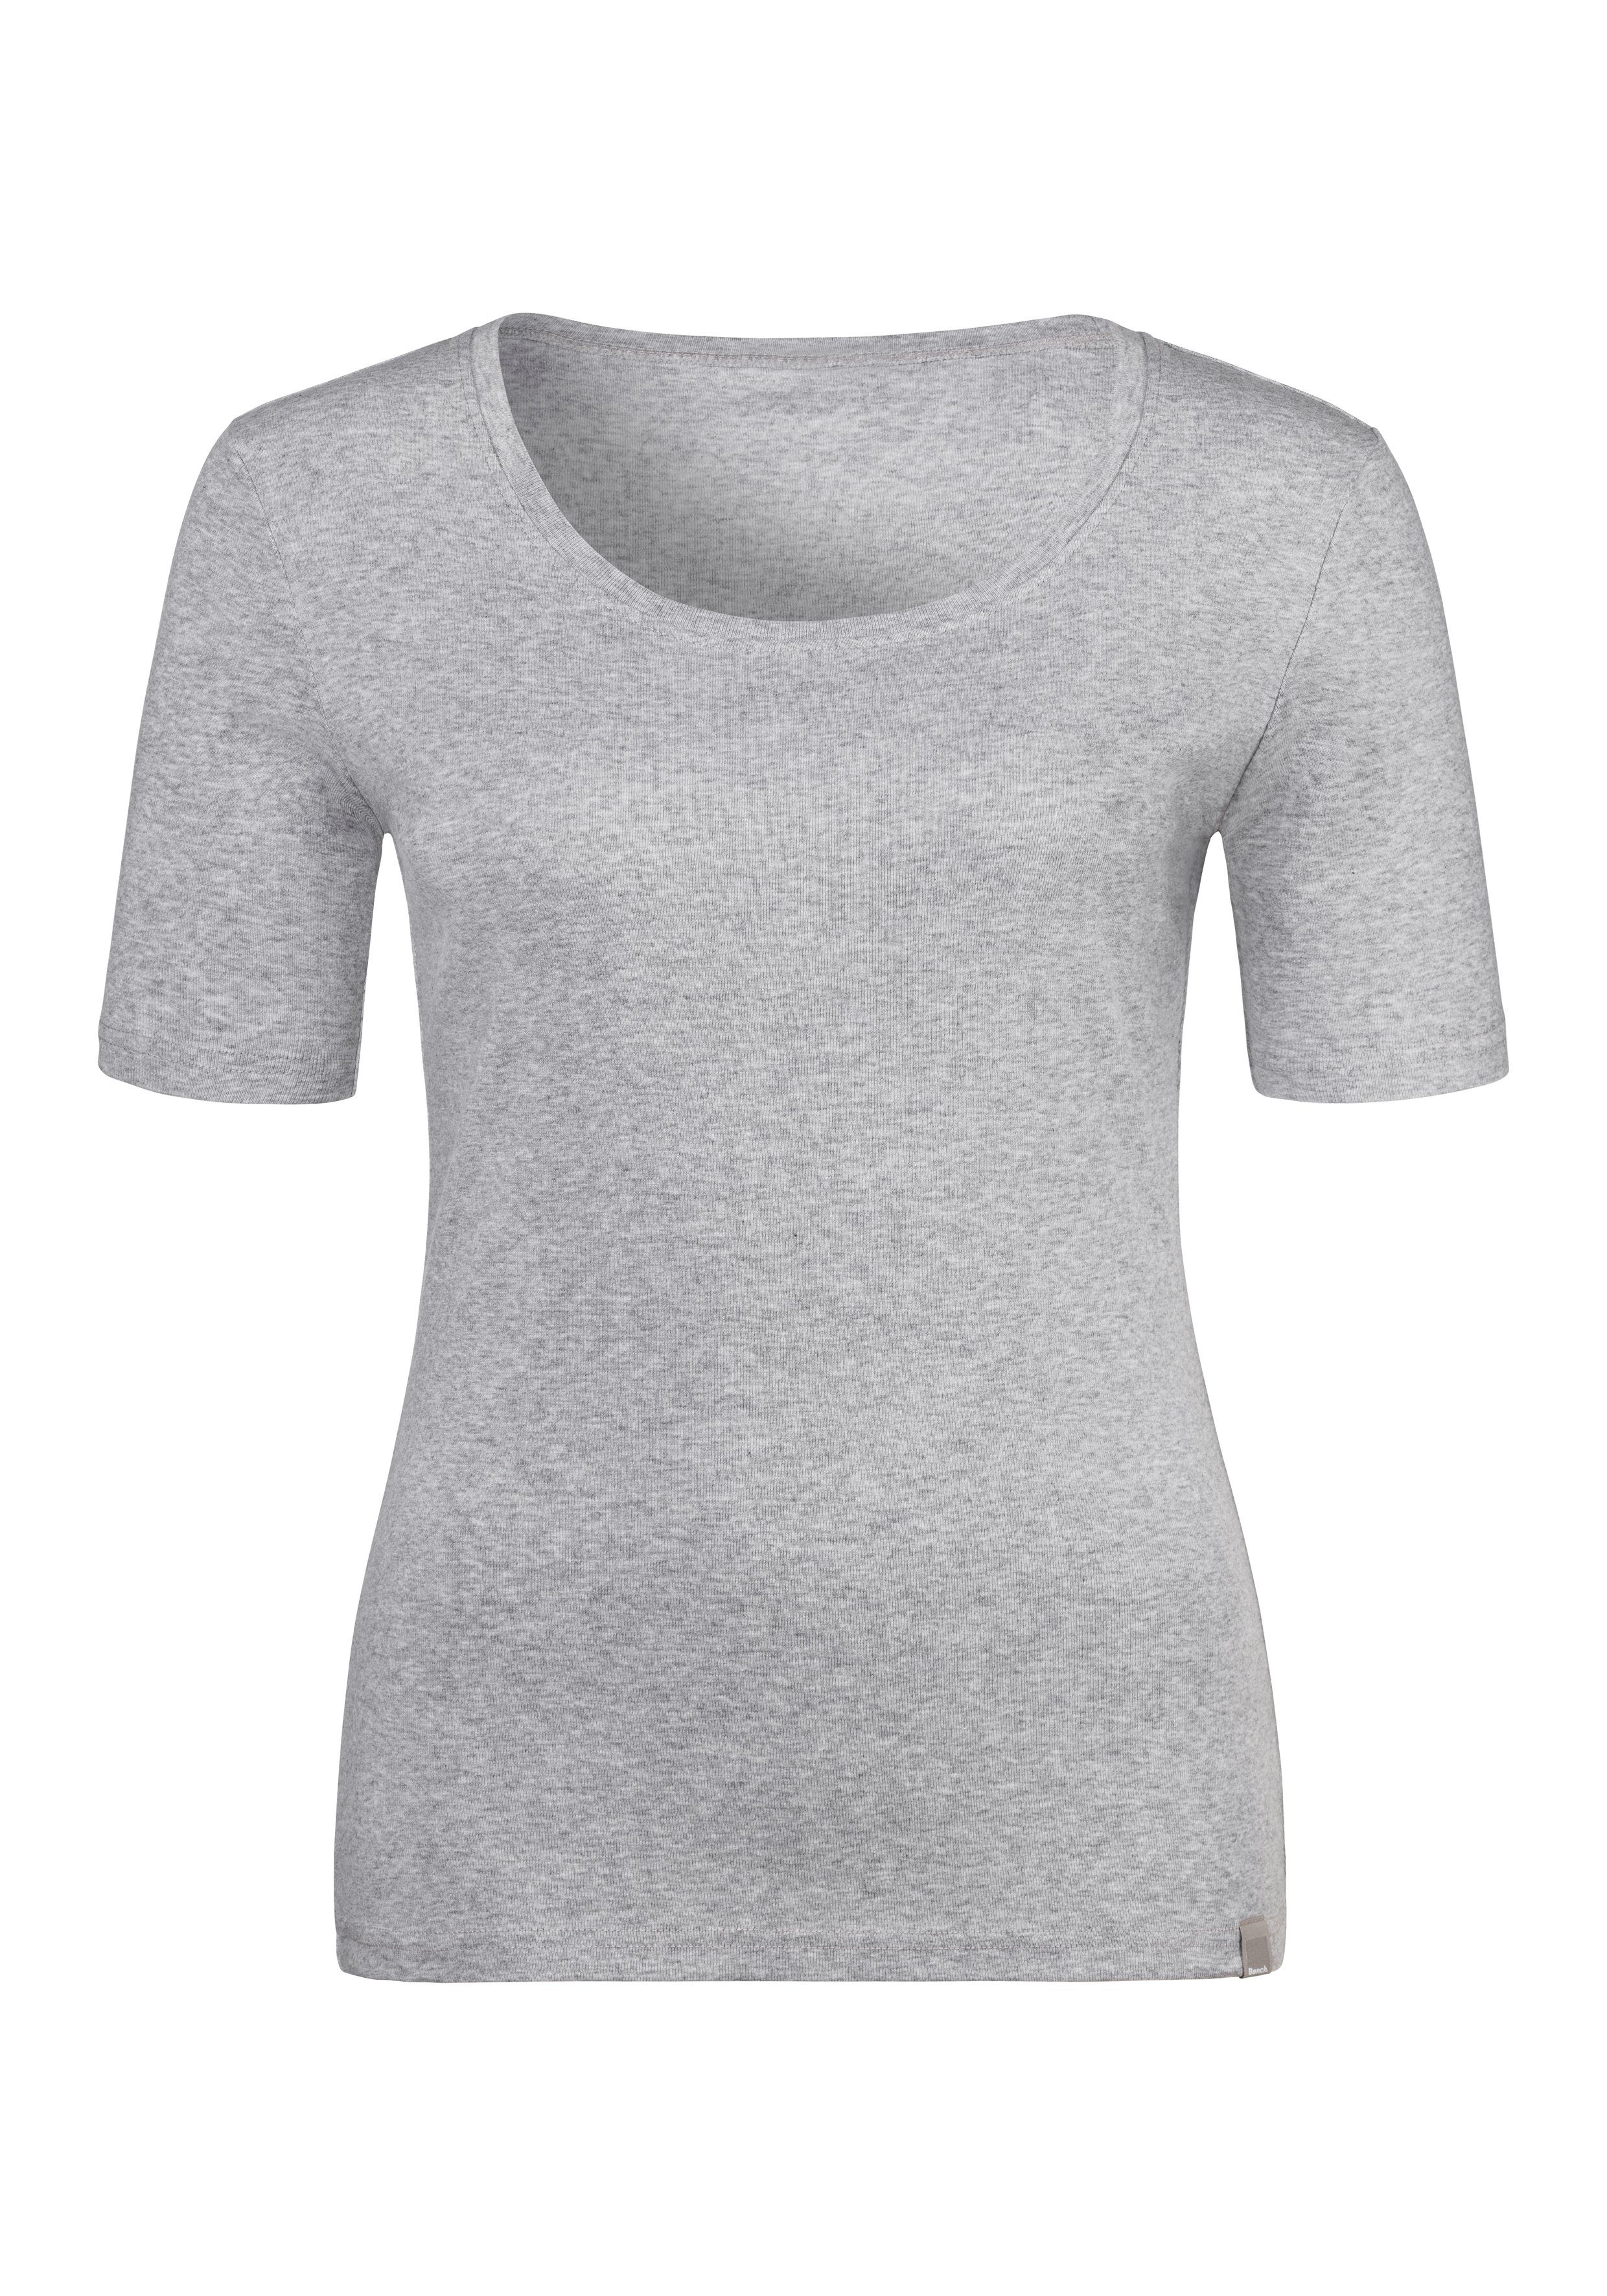 Bench. T-Shirt (2er-Pack) aus schwarz, Feinripp-Qualität, Unterziehshirt weicher grau-meliert